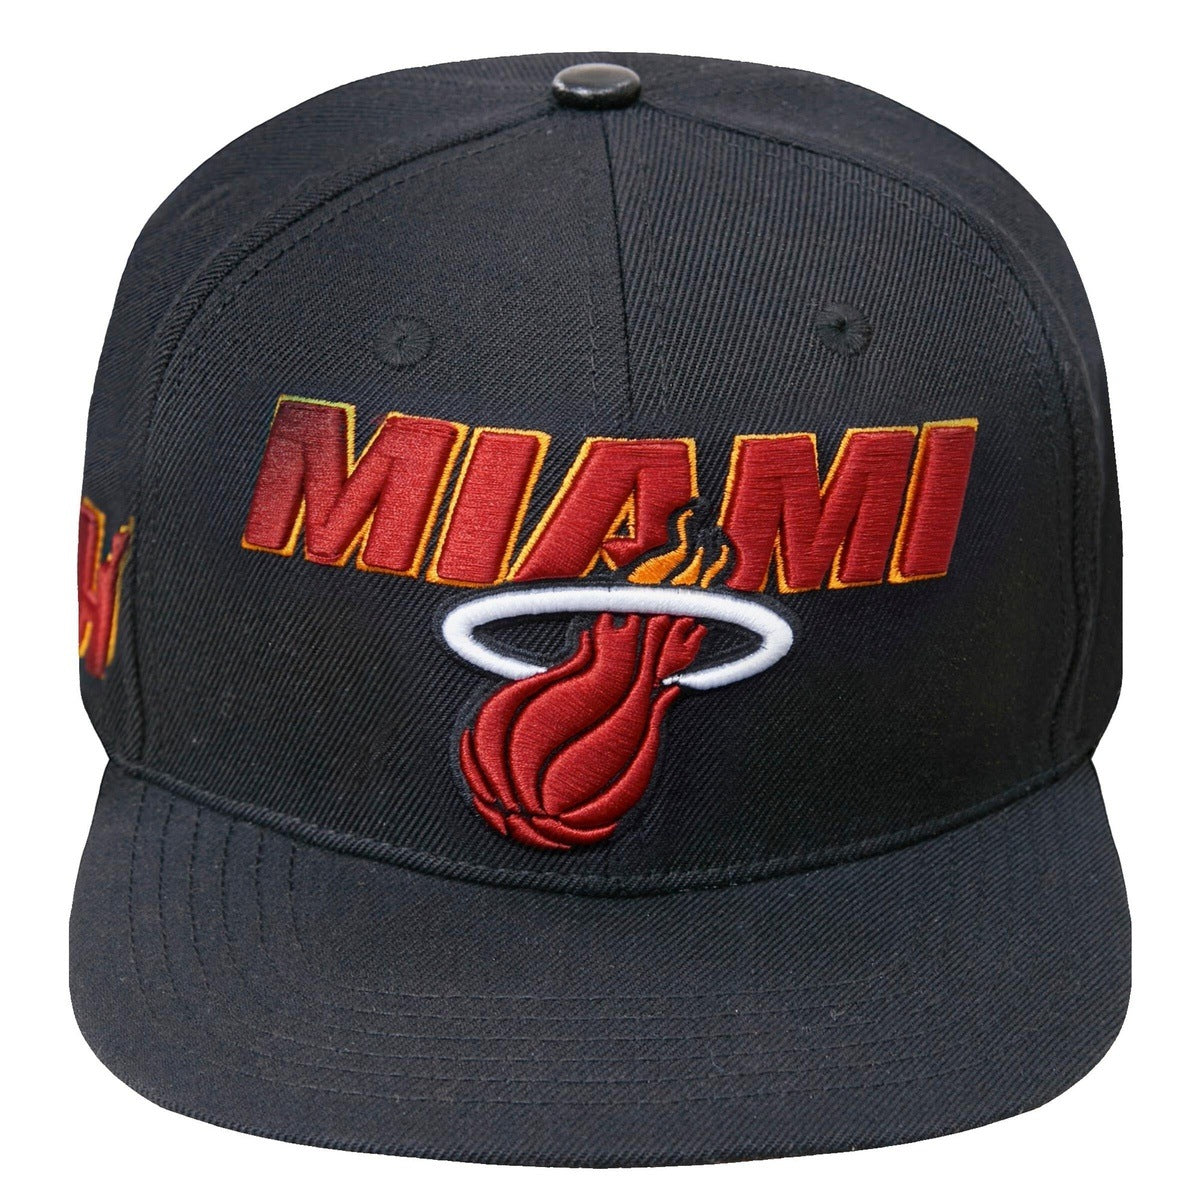 Pro Standard Miami Heat Warm Up T-Shirt - Black Small, Men's